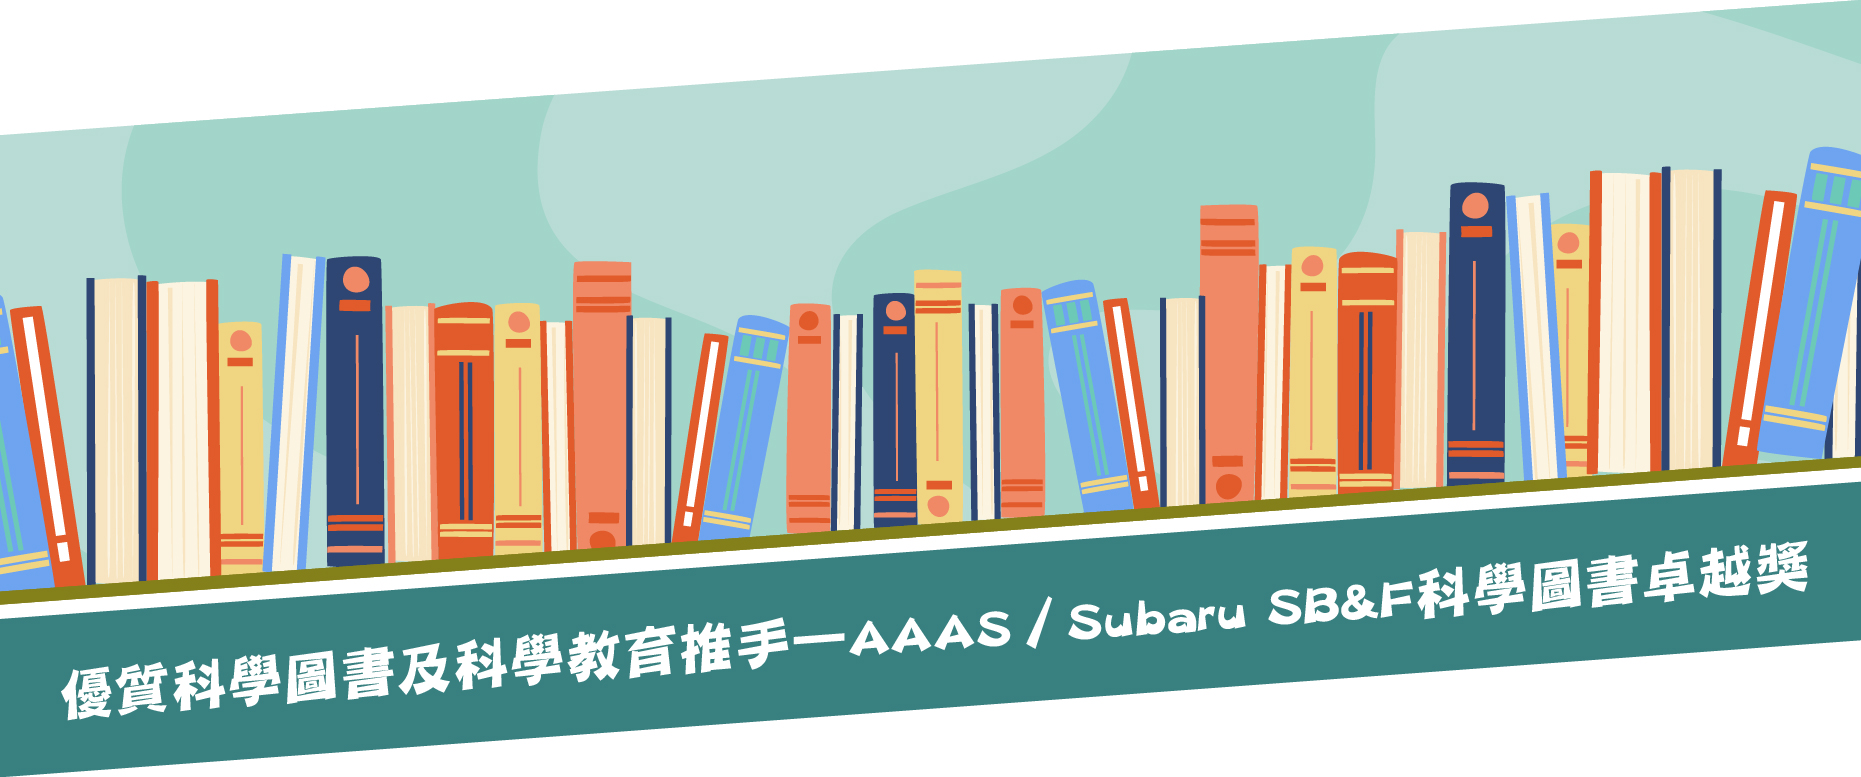 優質科學圖書及科學教育推手—AAAS／Subaru SB&F科學圖書卓越獎